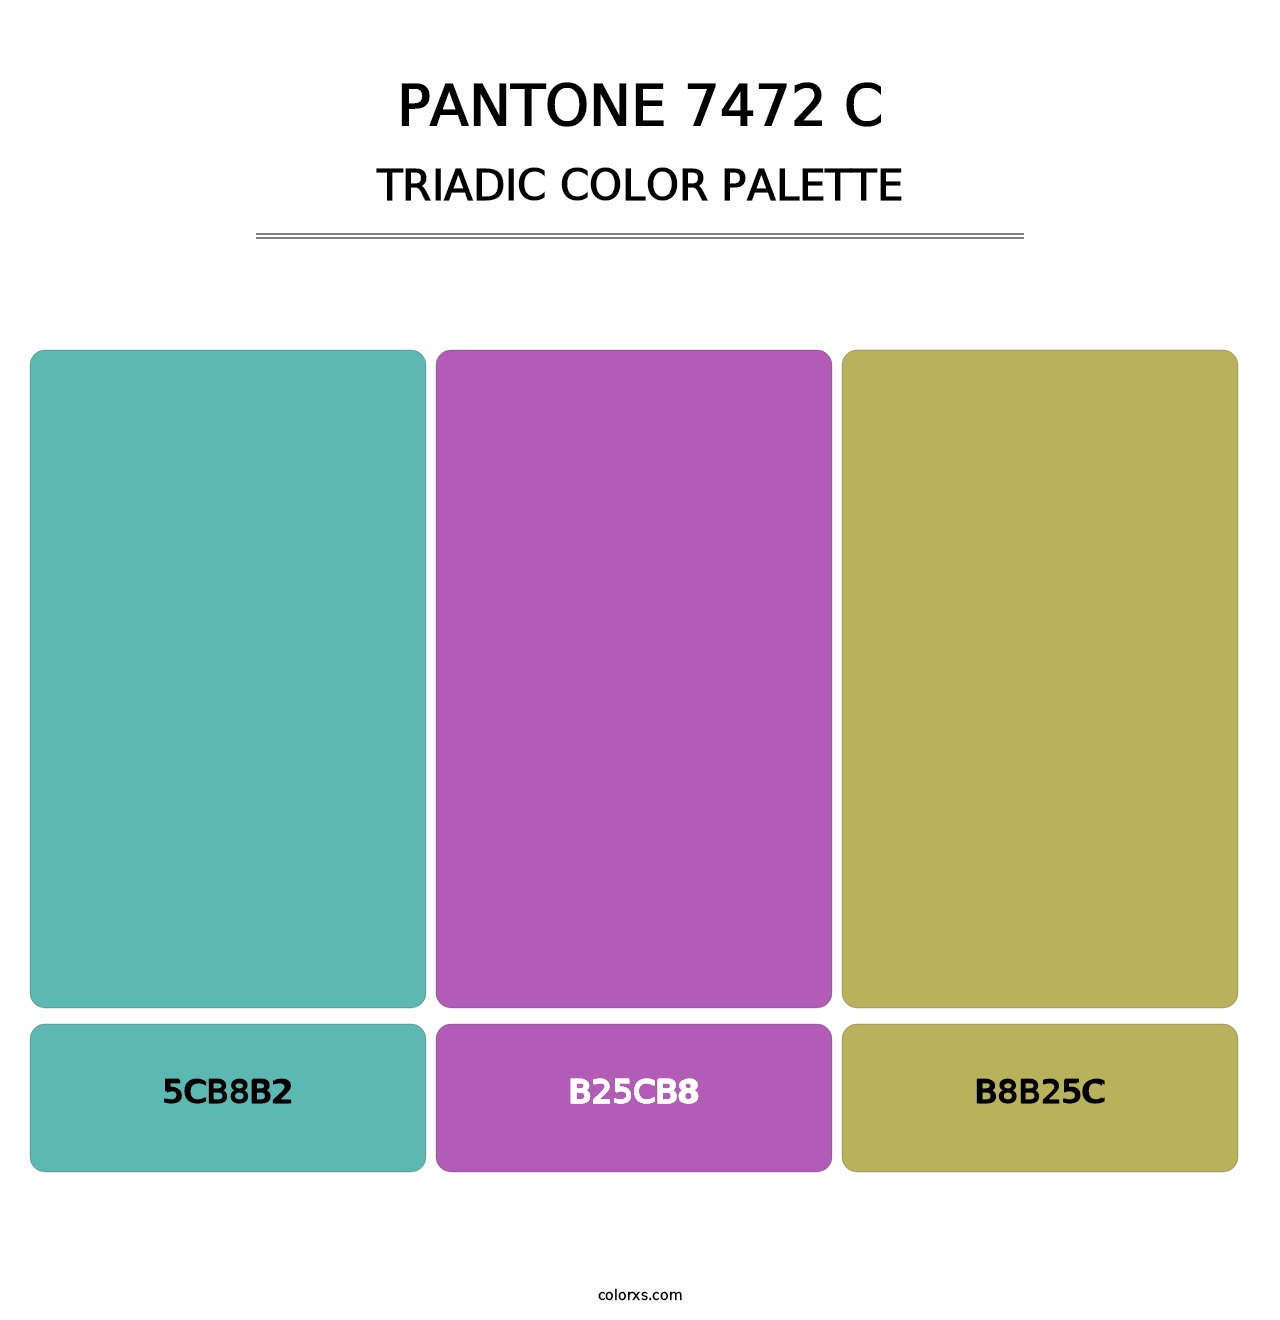 PANTONE 7472 C - Triadic Color Palette